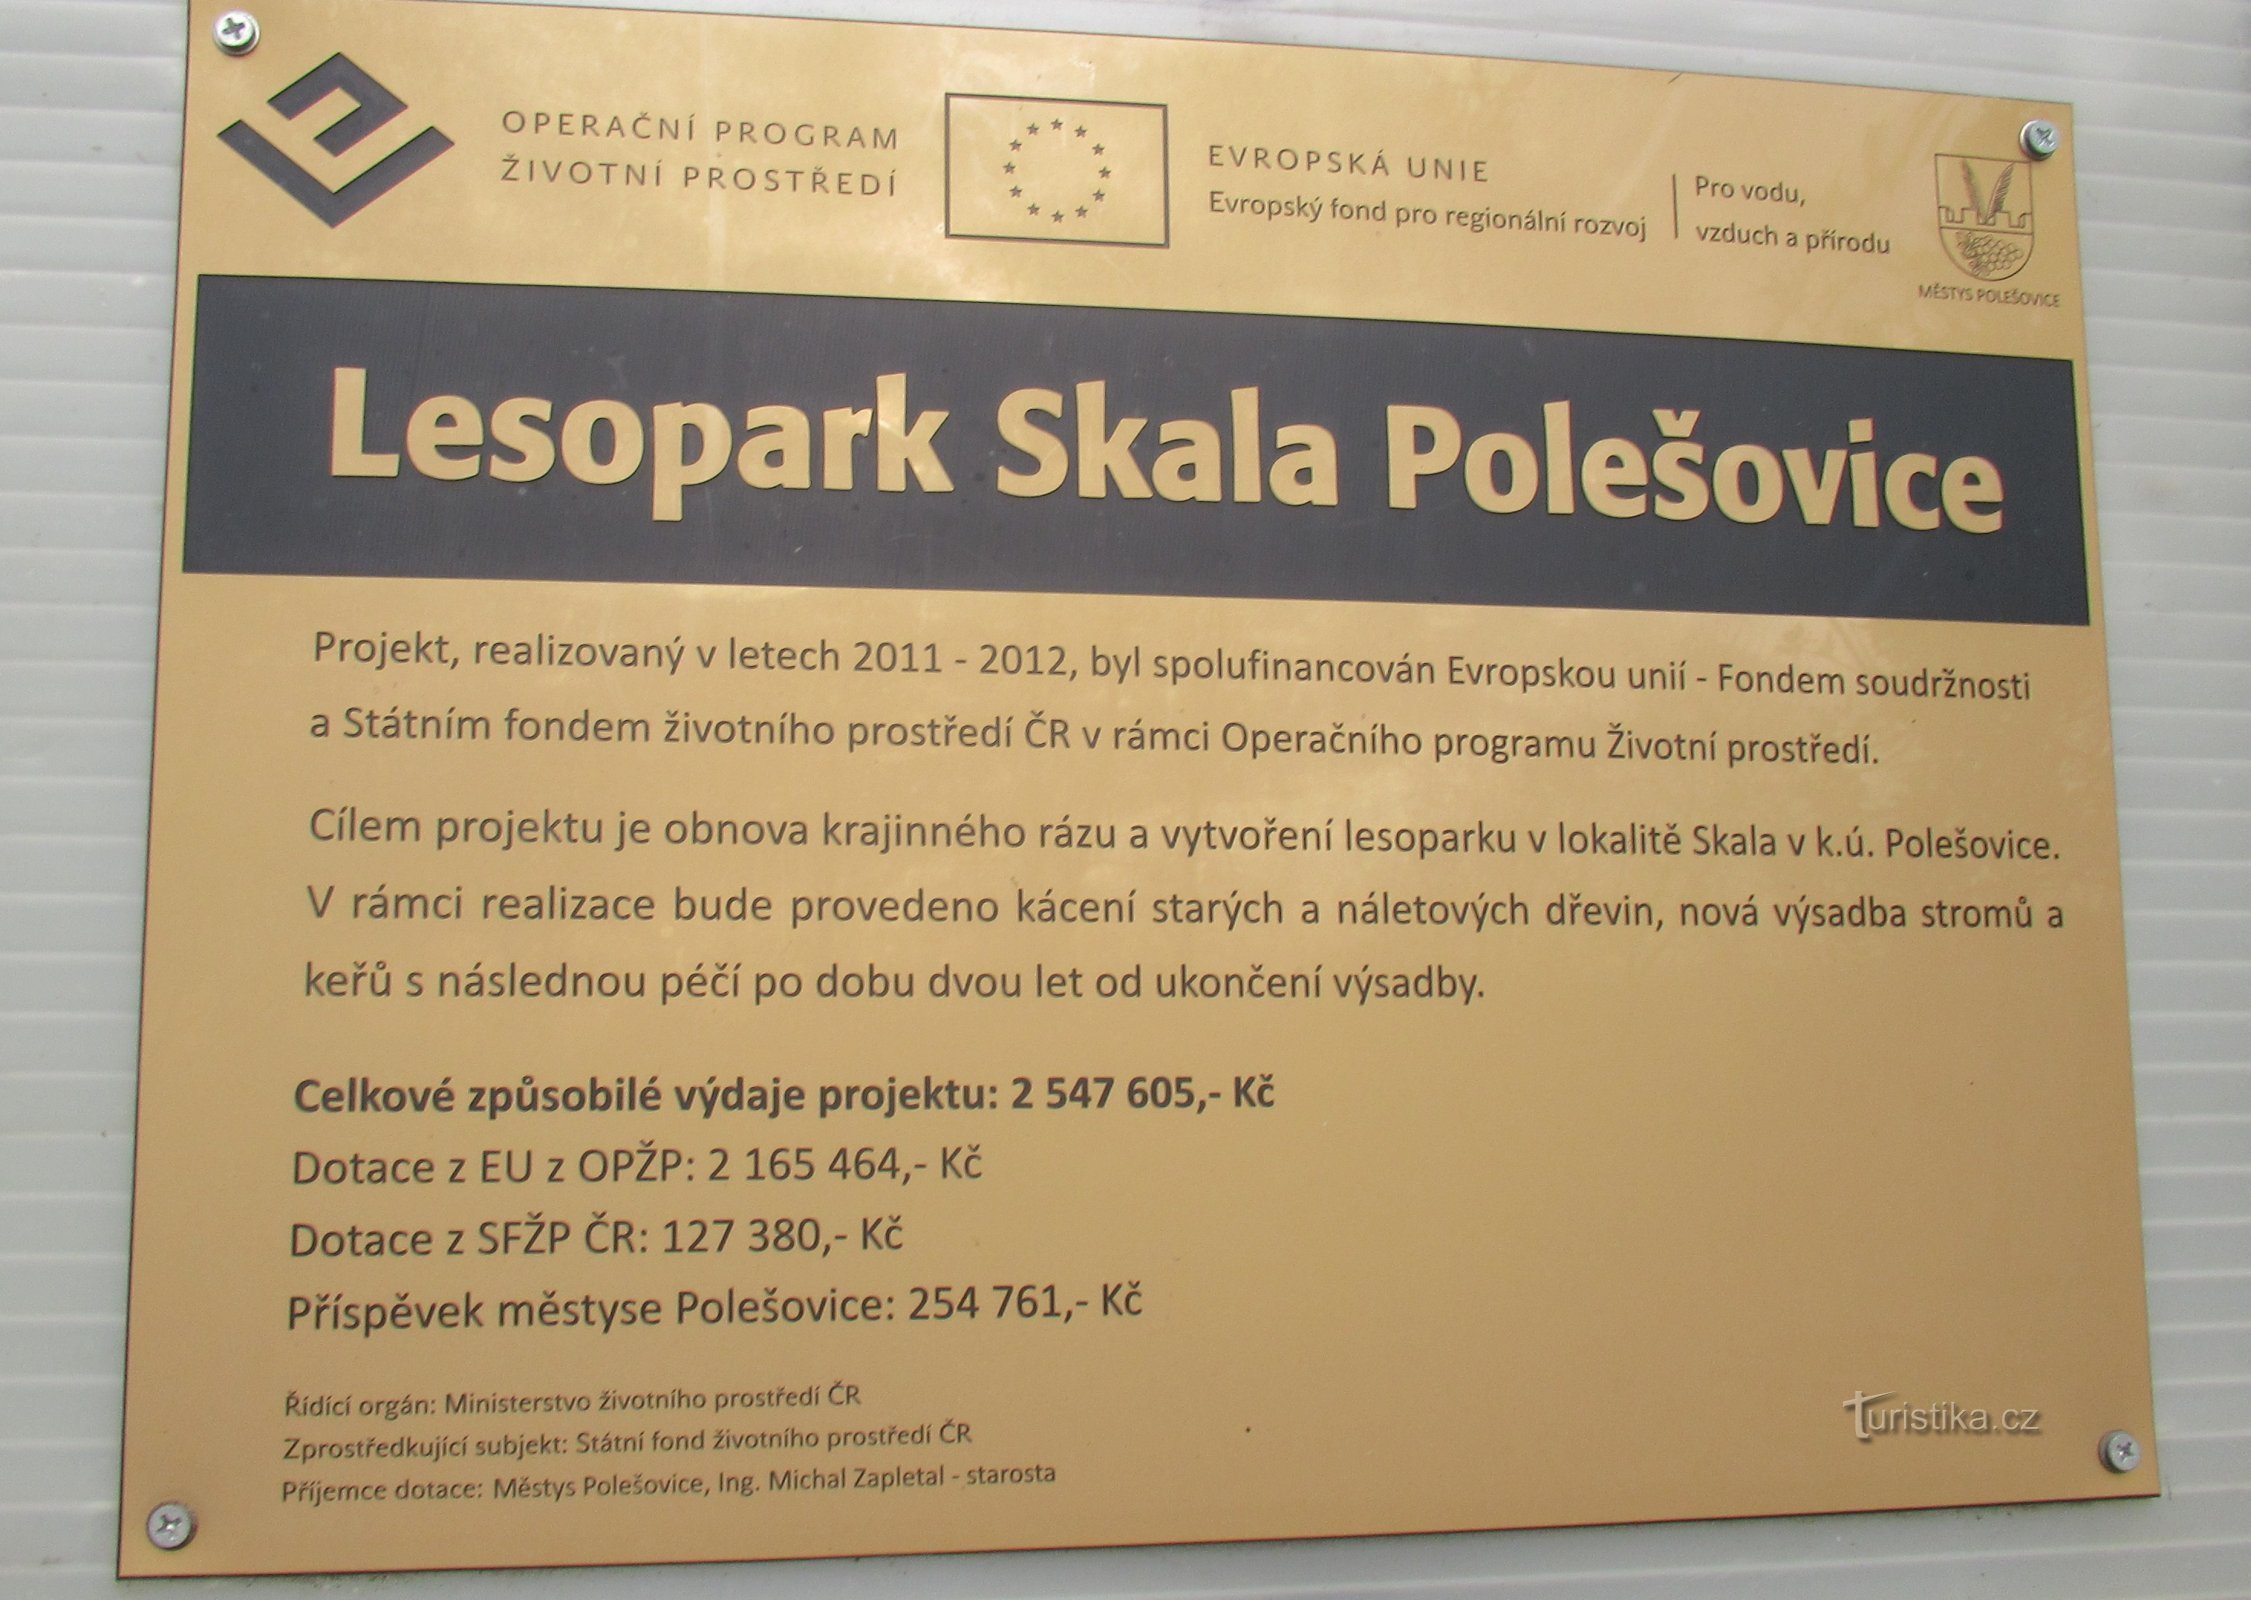 Floriánka observationstorn, dekoration av skogsparken Skala nad Polešovice